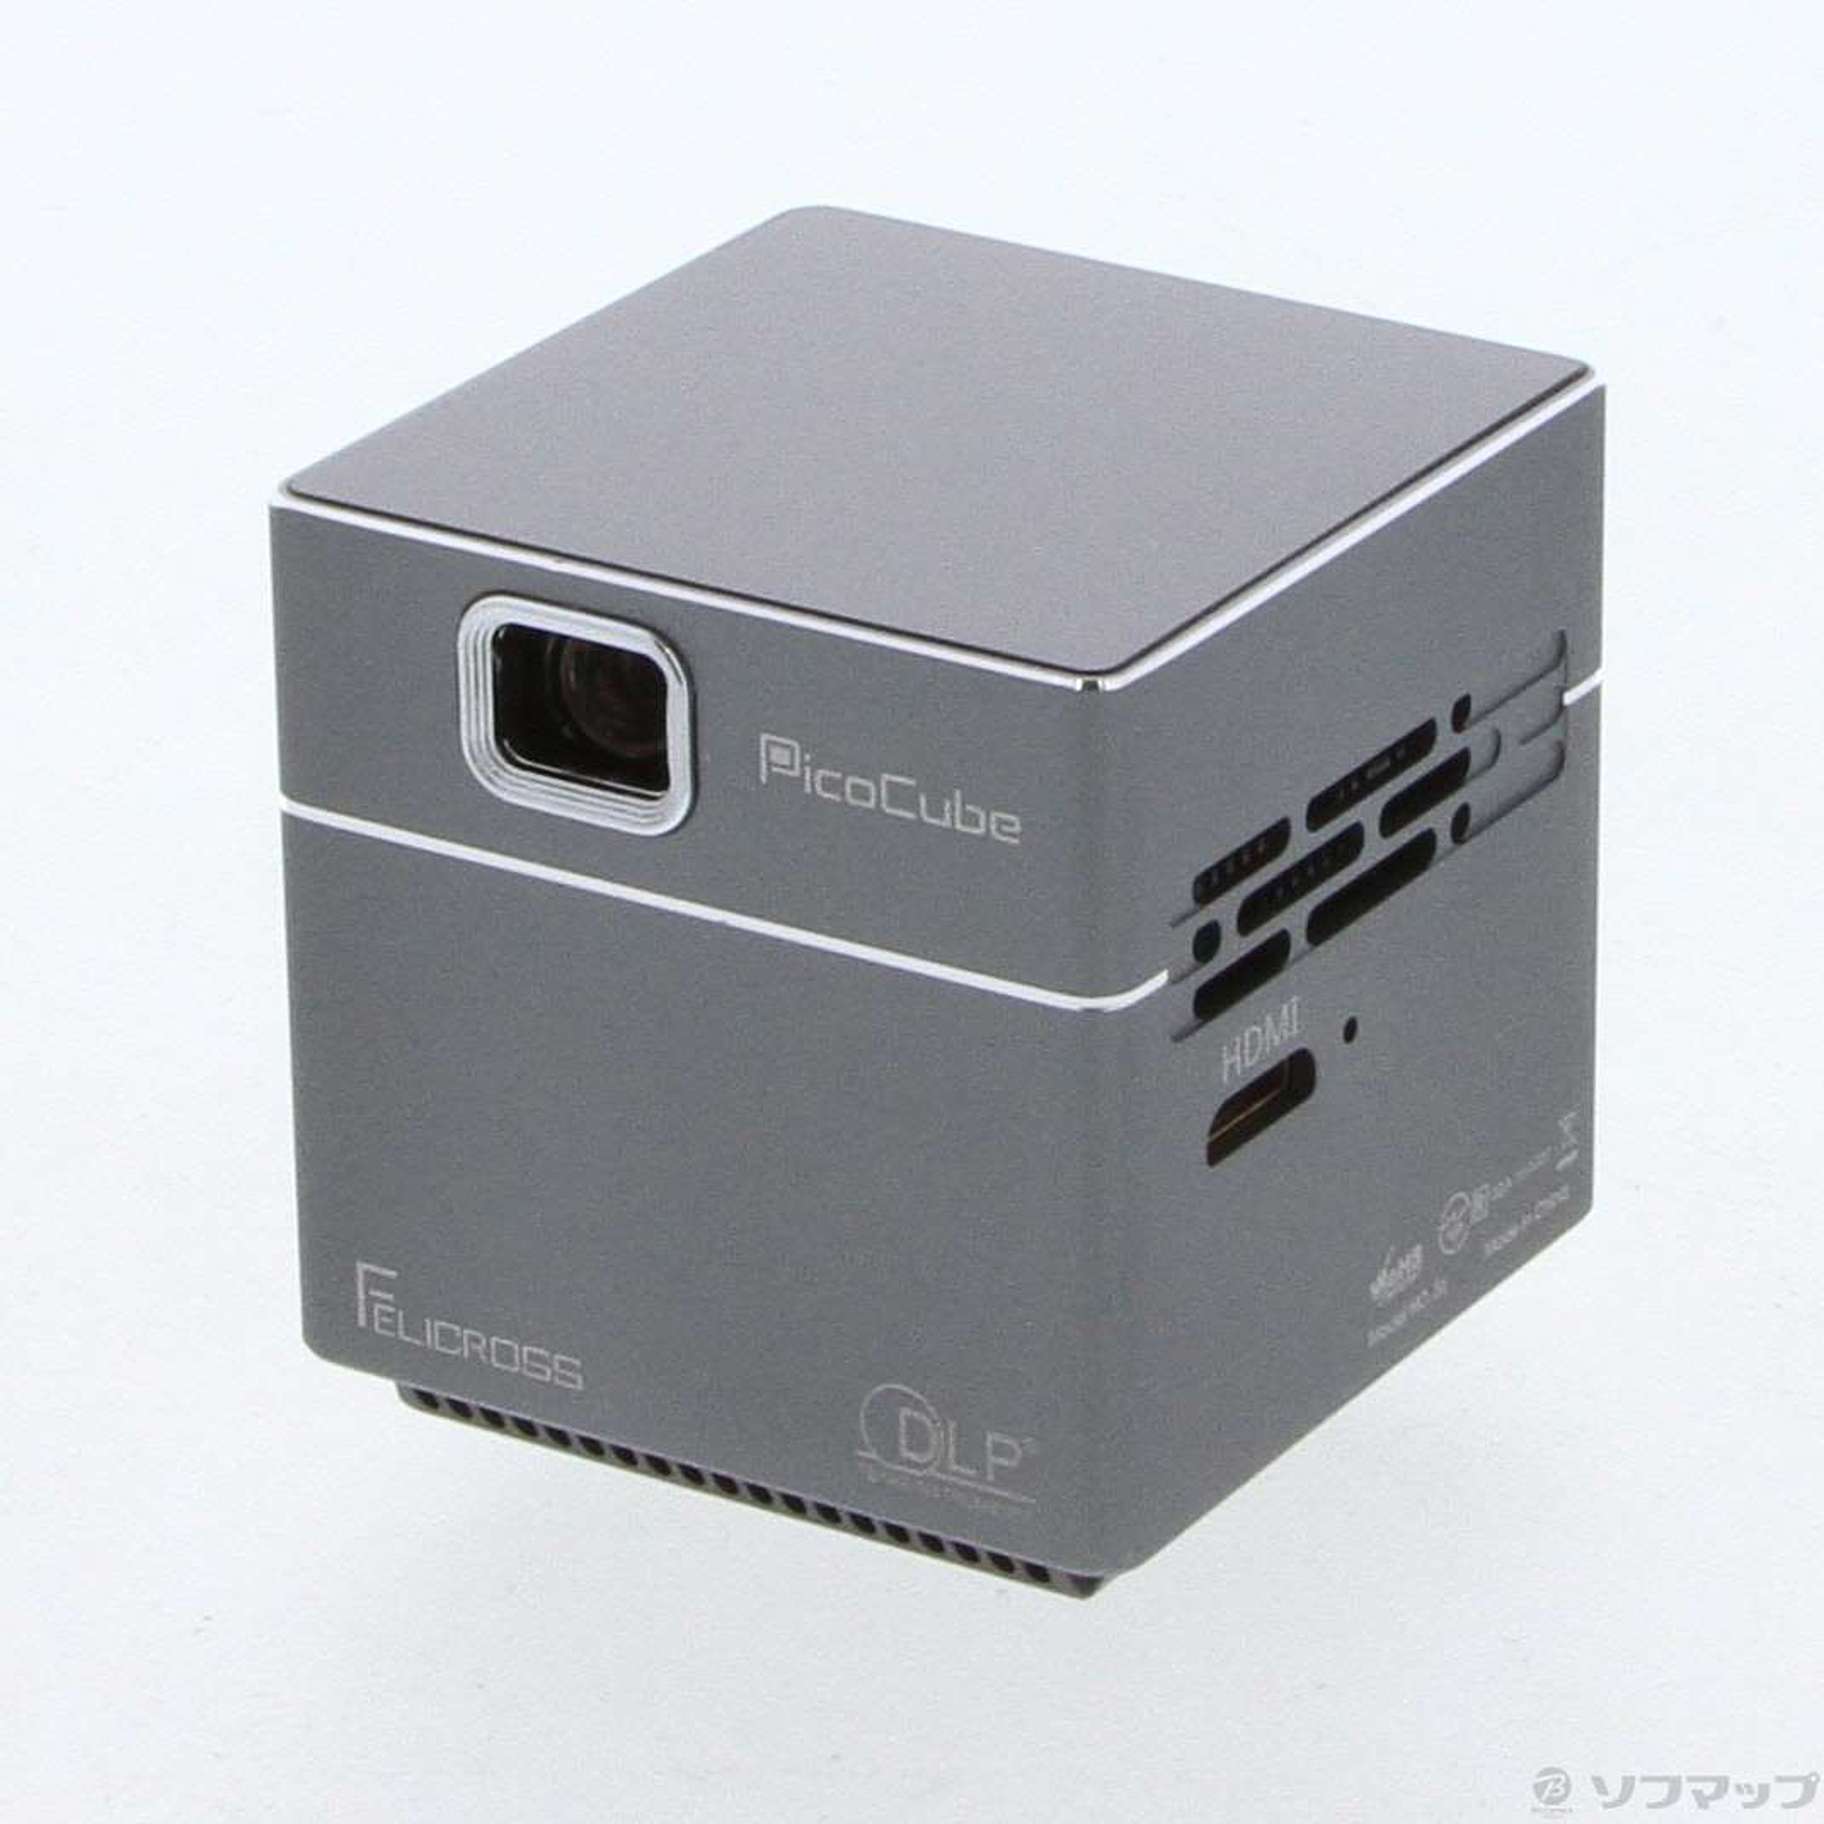 新品未使用❗ FELICROSS 小型プロジェクター Pico Cube S6 